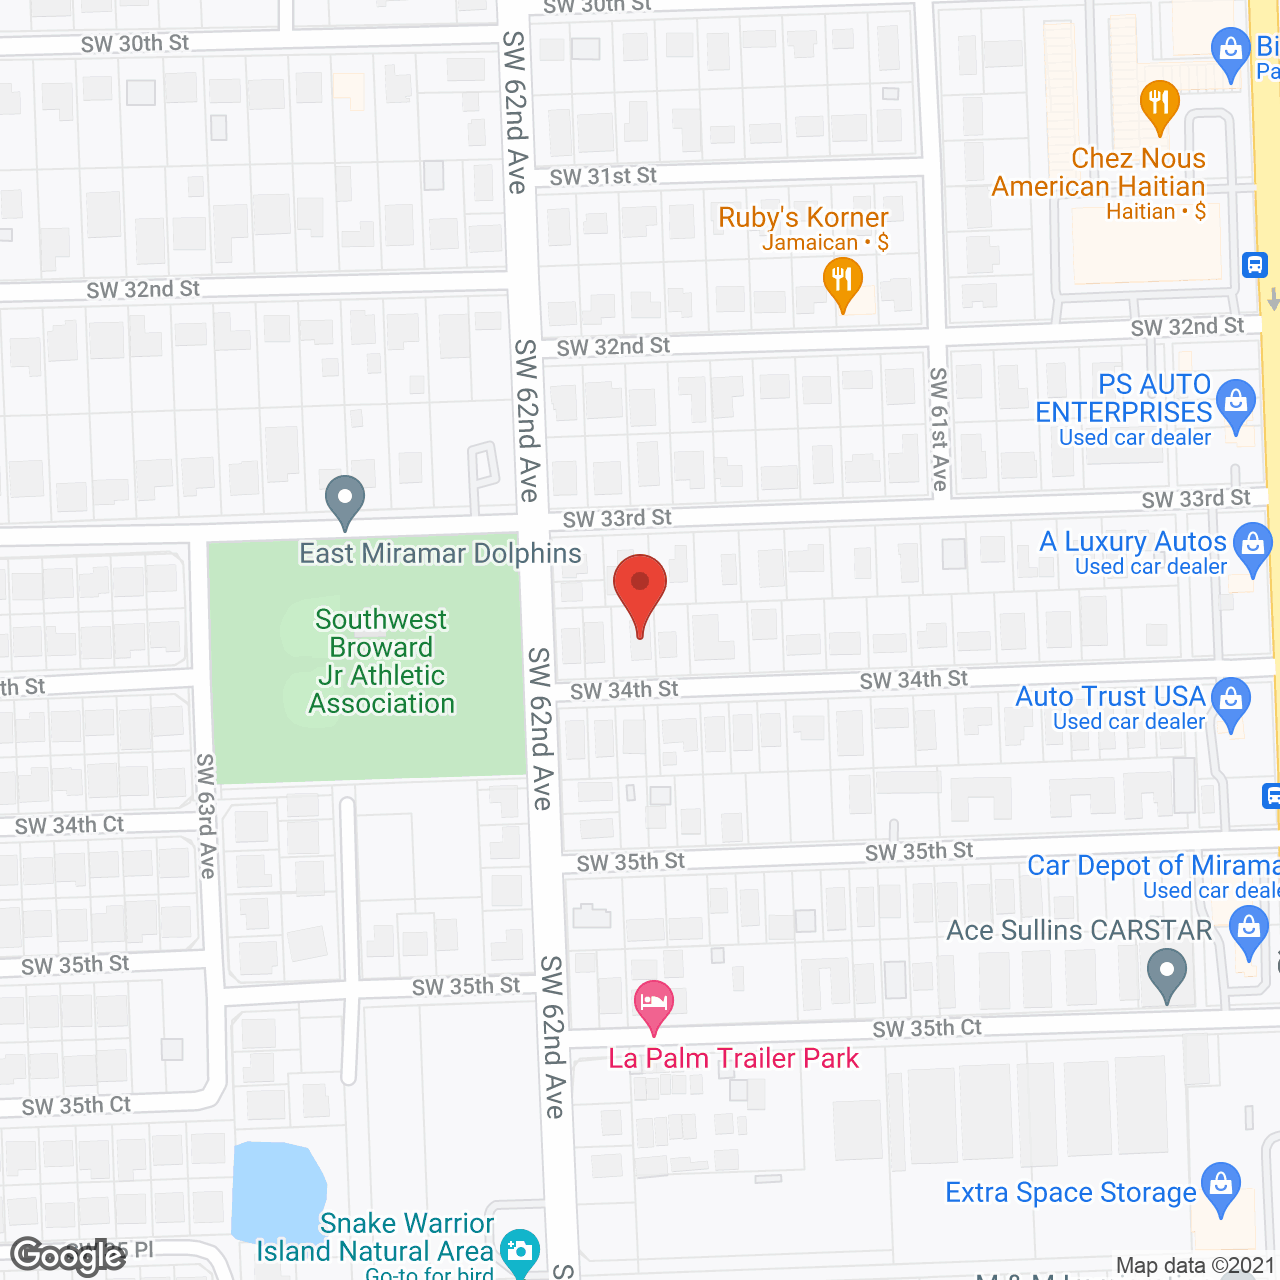 South Oaks ALH in google map